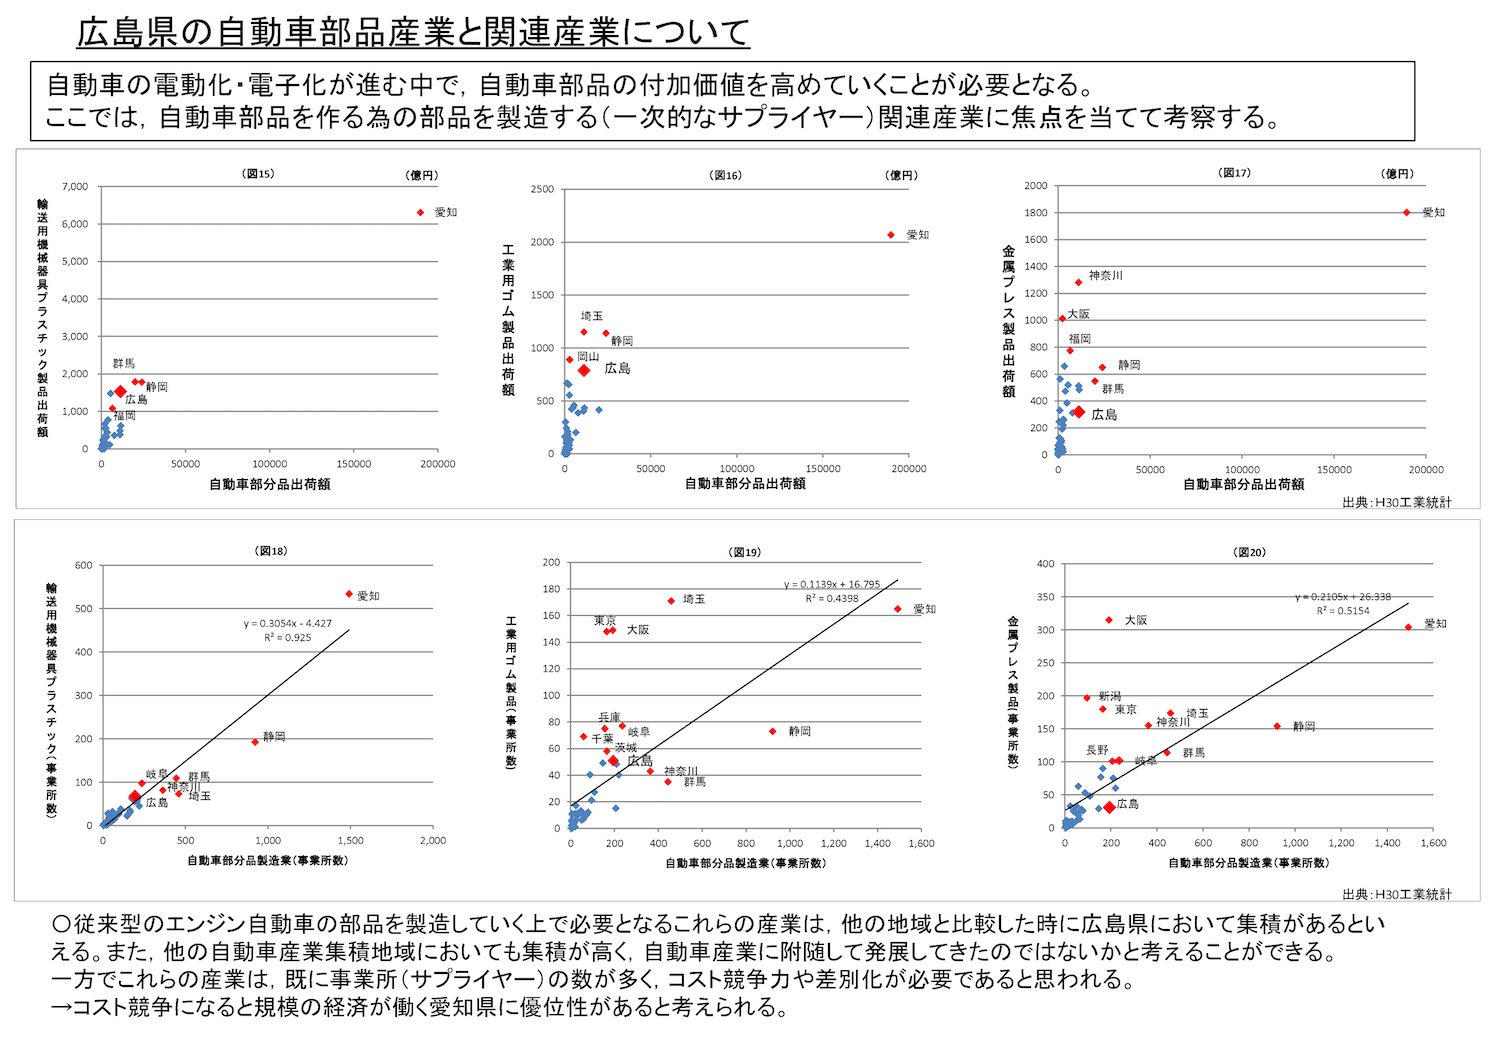 「データから見た広島県産業の特徴」における分析例